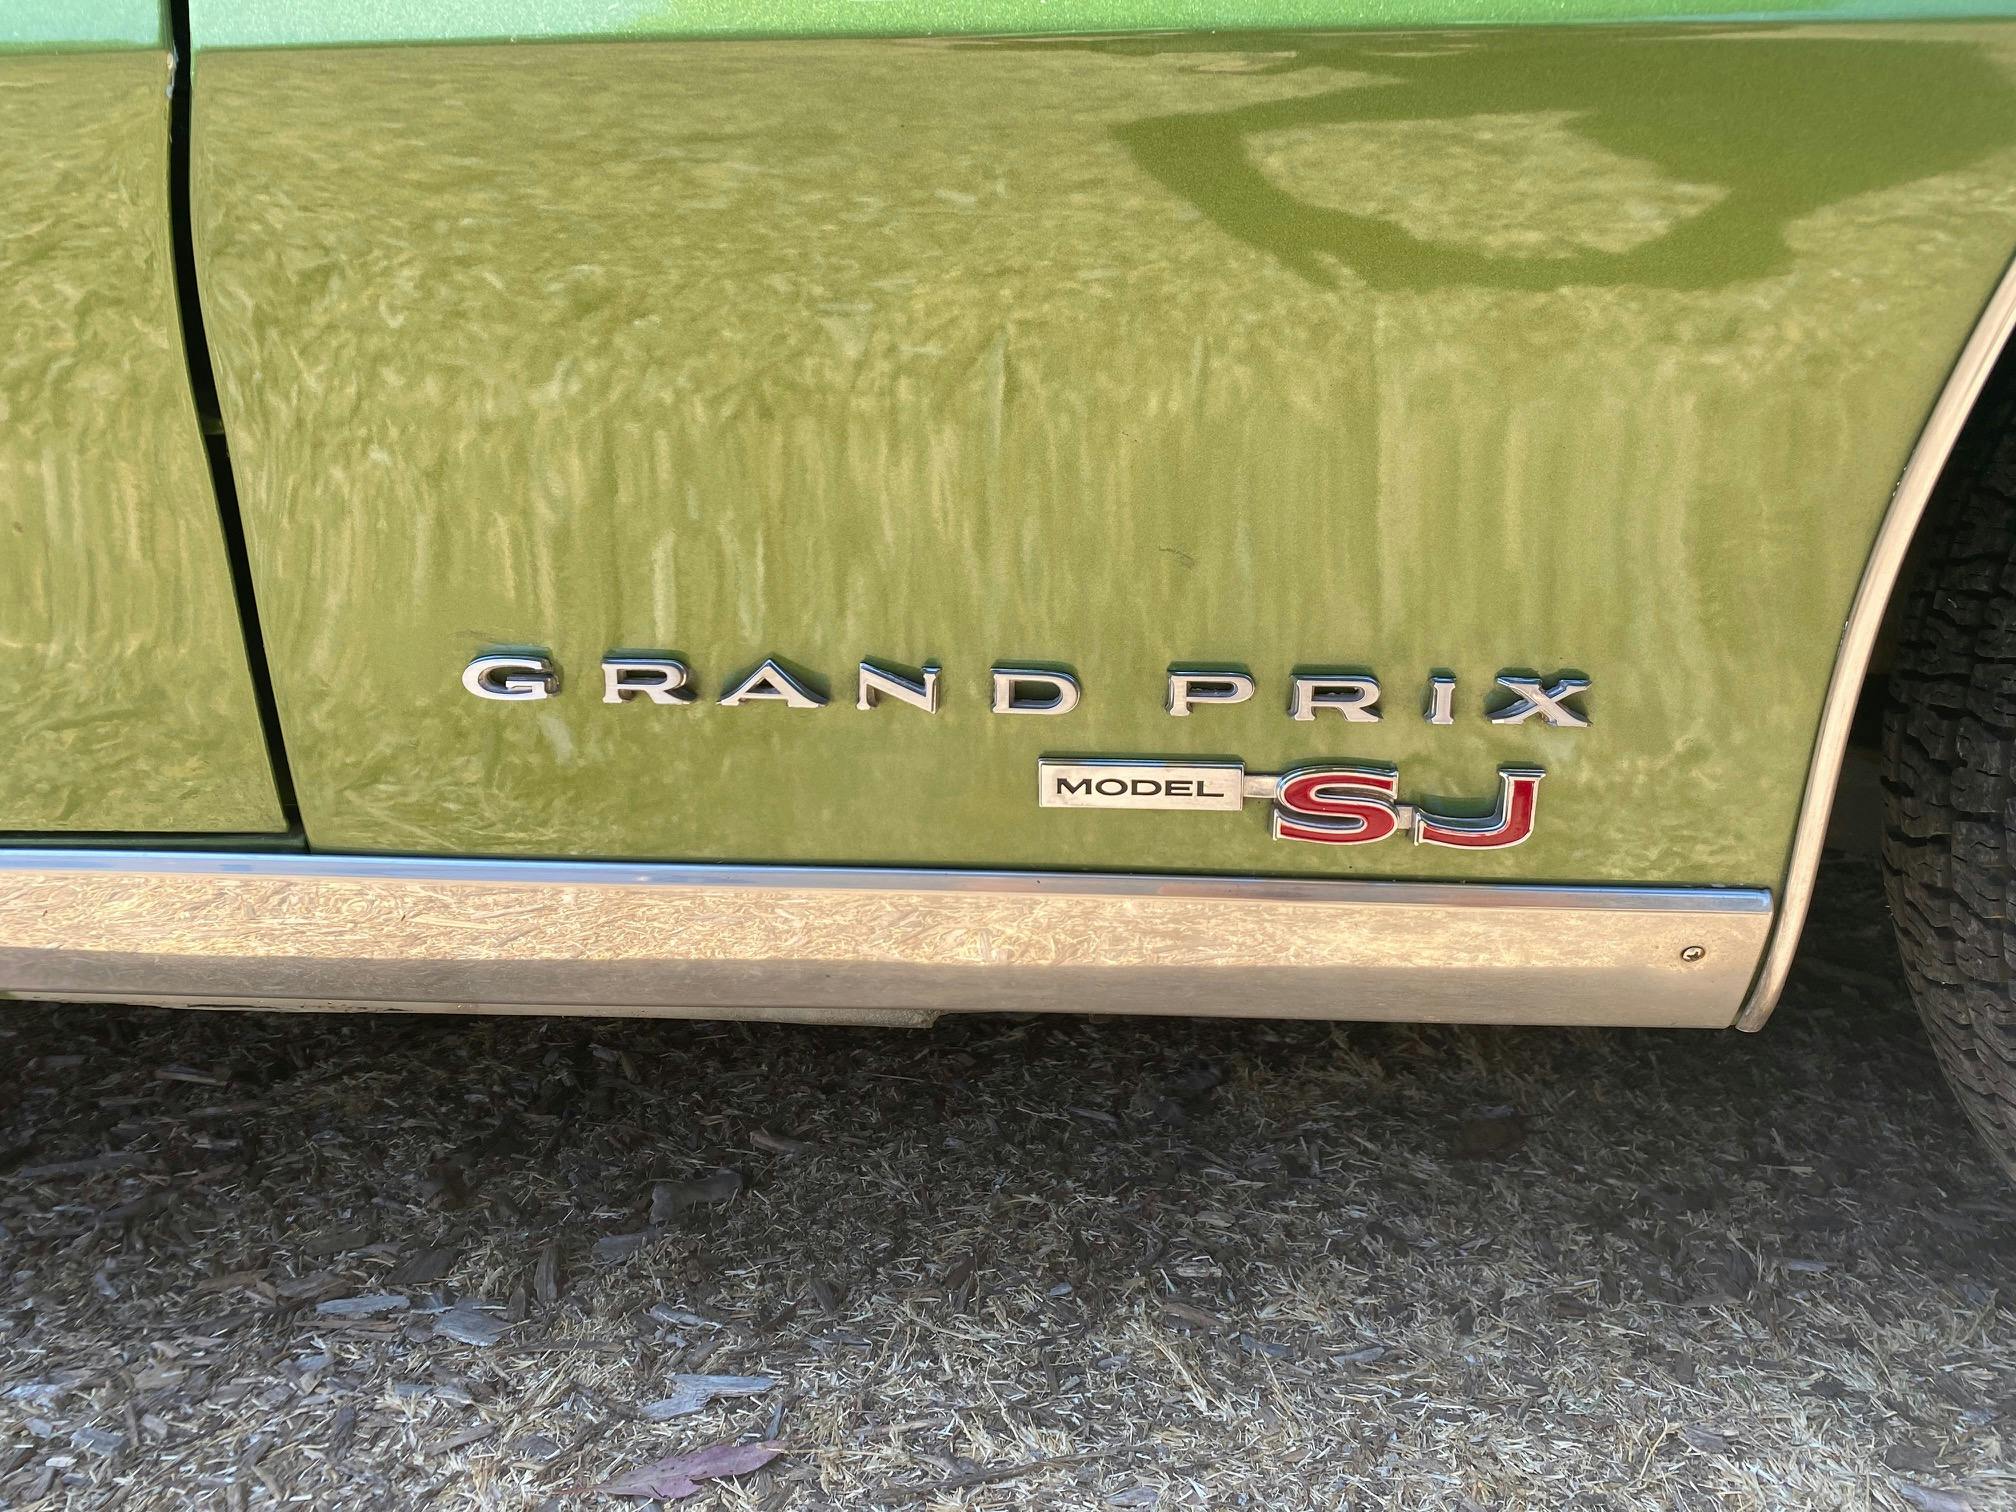 1969 Pontiac Grand Prix SJ logo detail